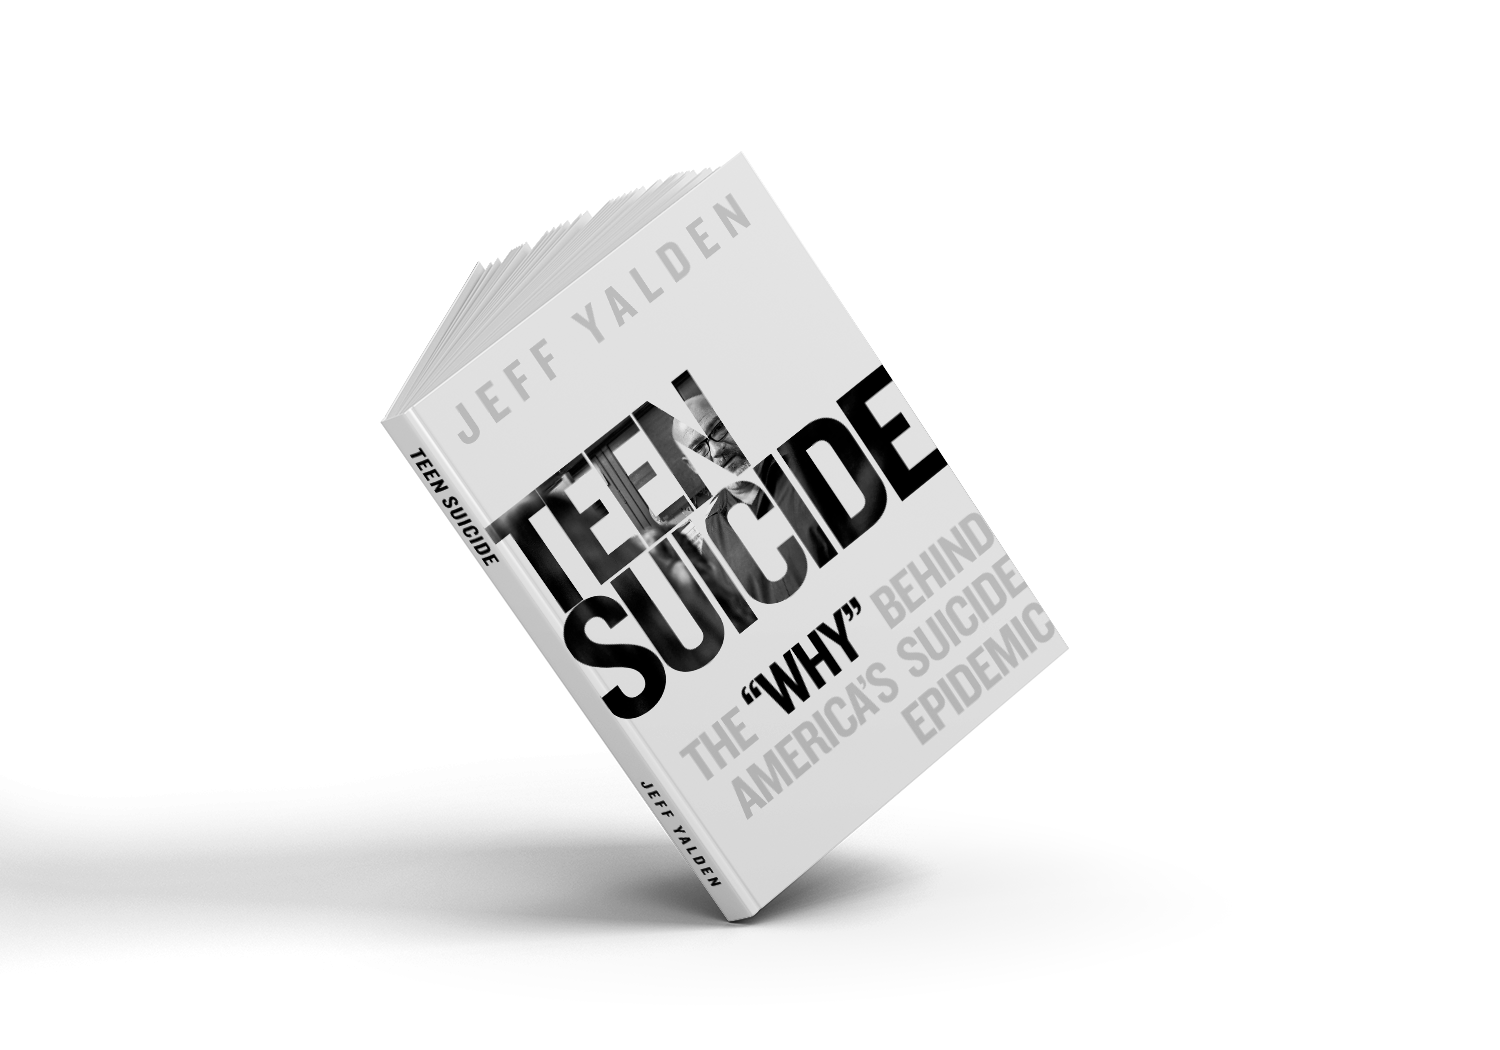 Teen Suicide Book